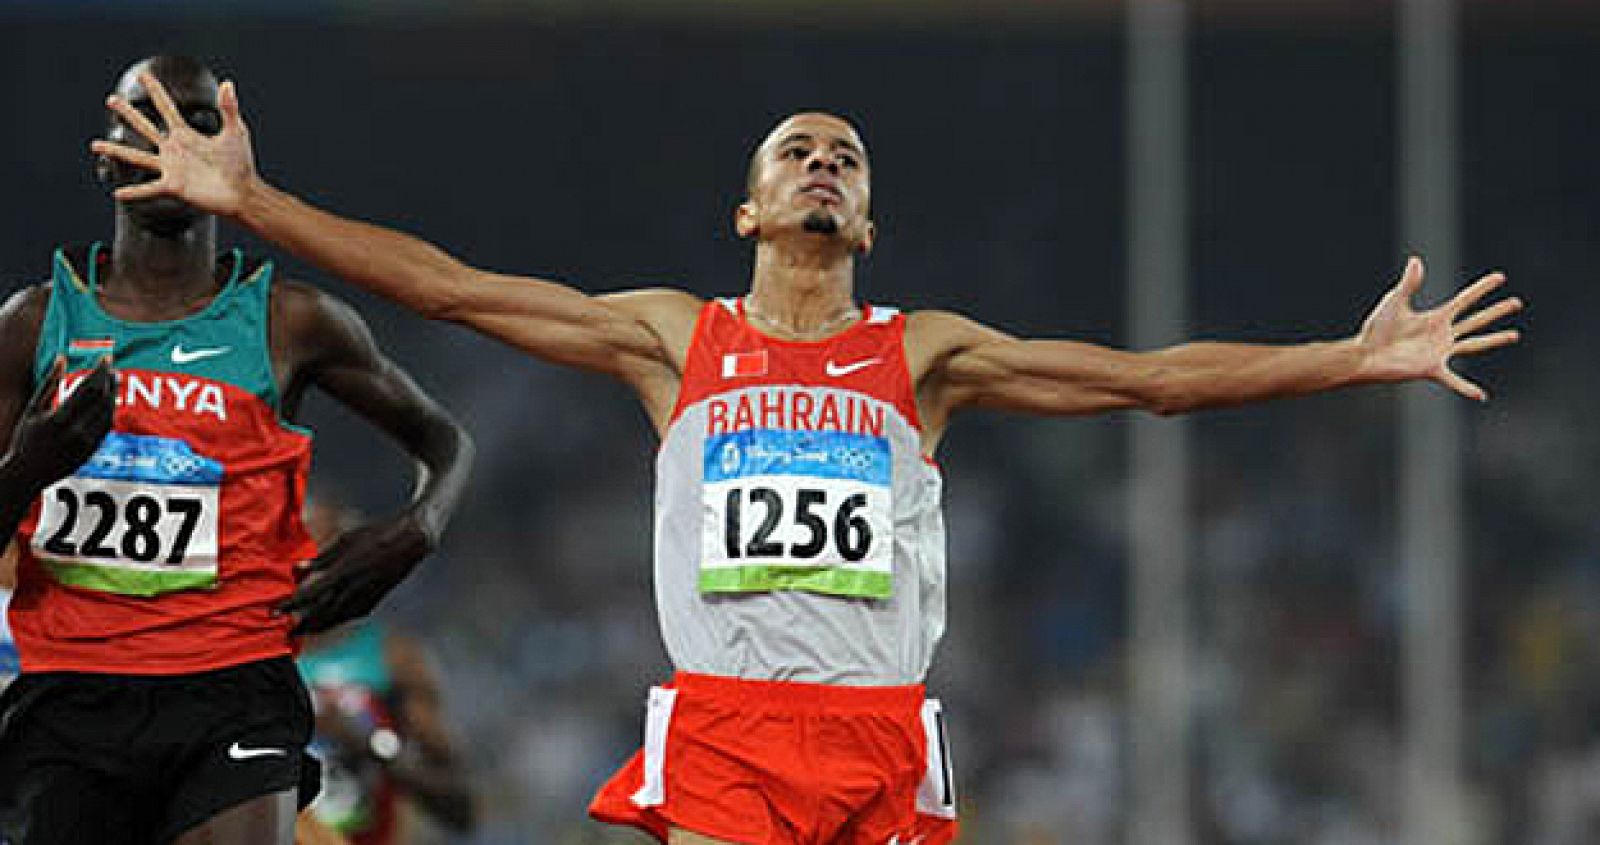 Imagen del atleta Rashid Ramzi cruzando primero la línea de meta en la carrera de 1.500 metros en Pekín.